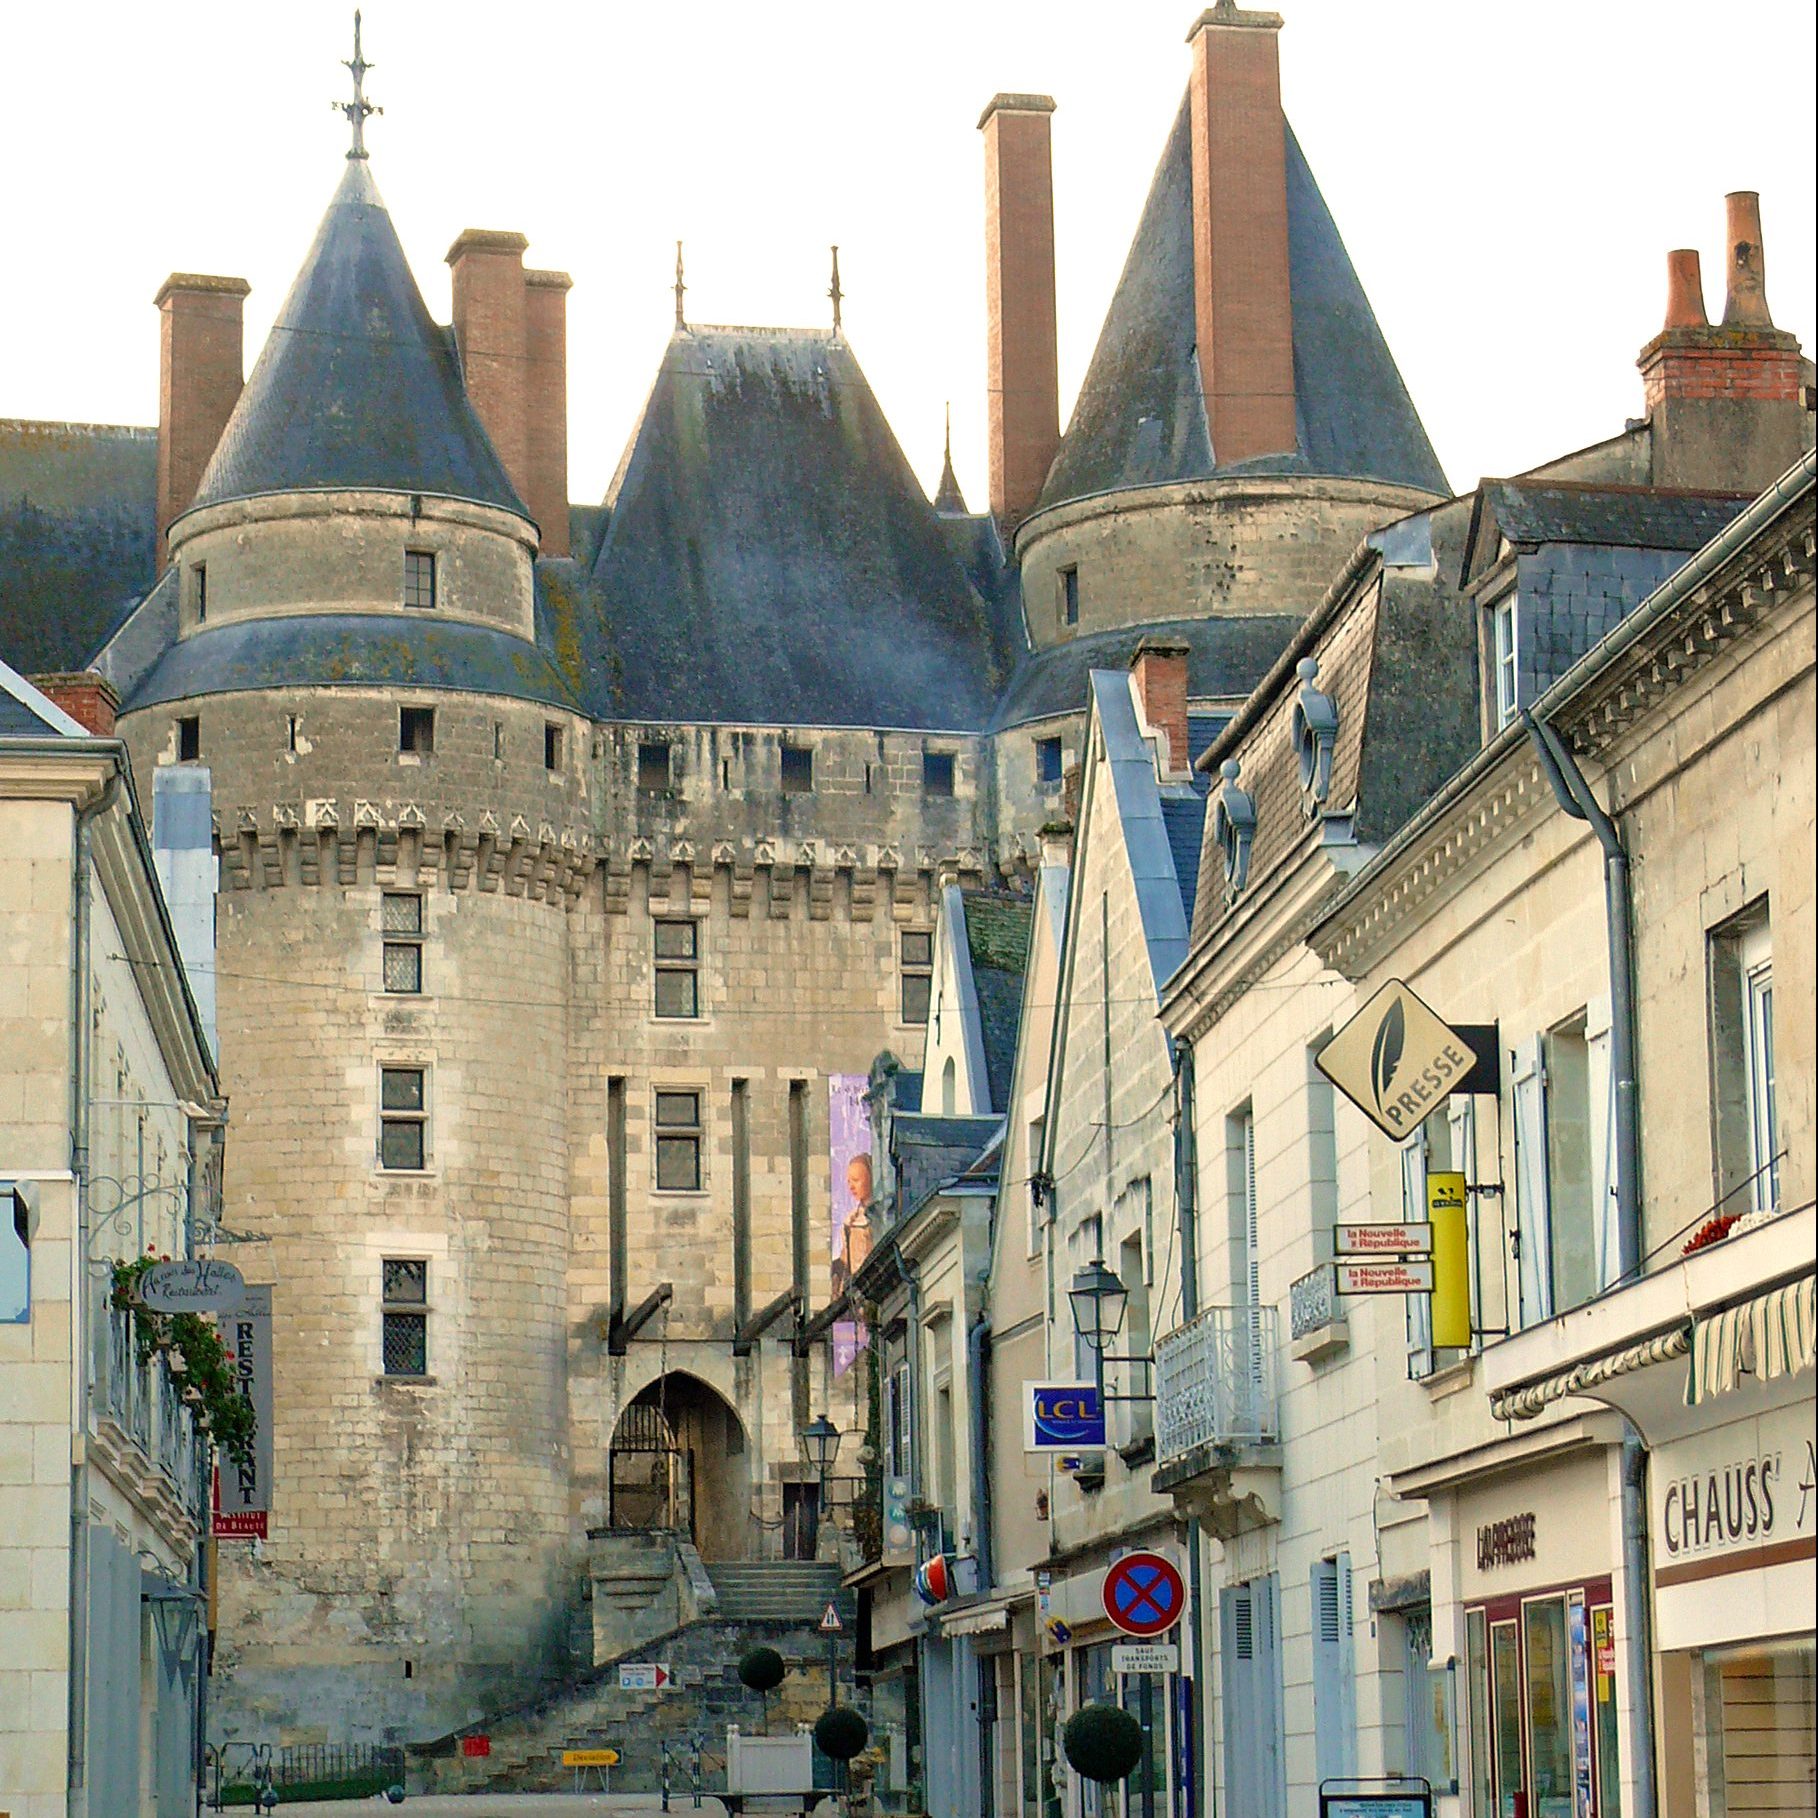 Chateau_de_Langeais_et_rue_Thiers(cc)Claude villetaneuse